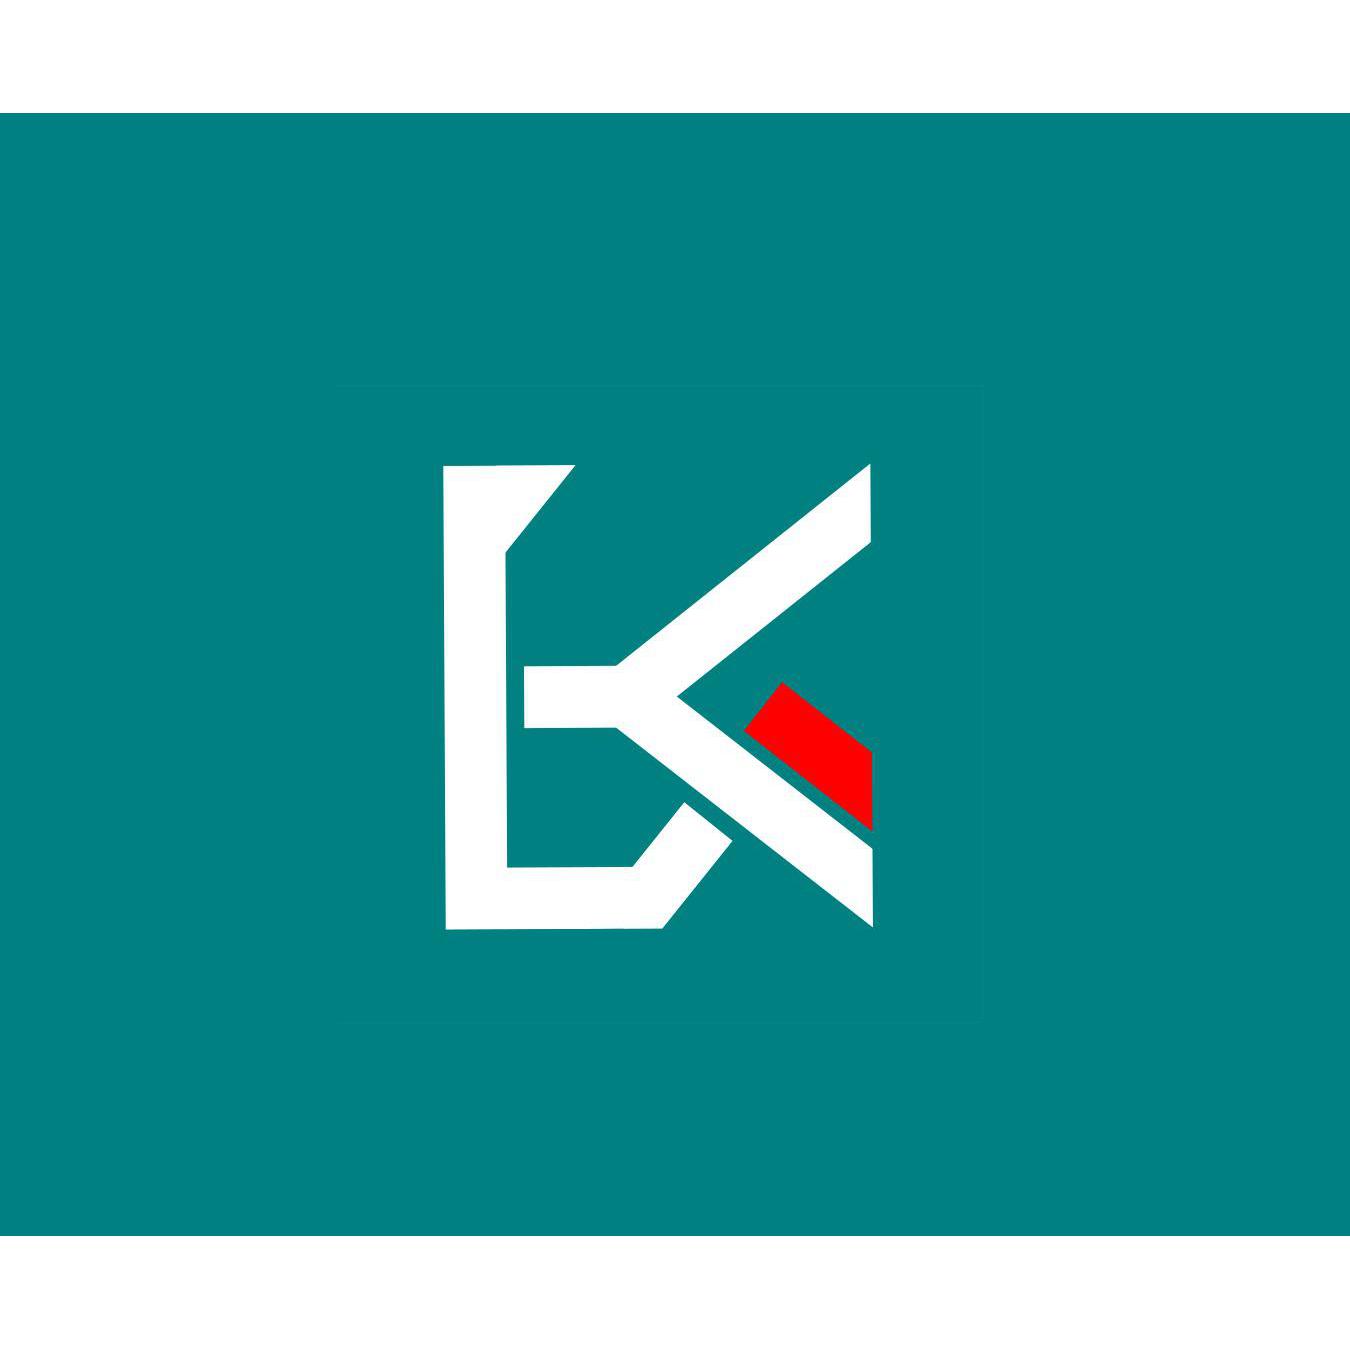 Sector Kast Logo